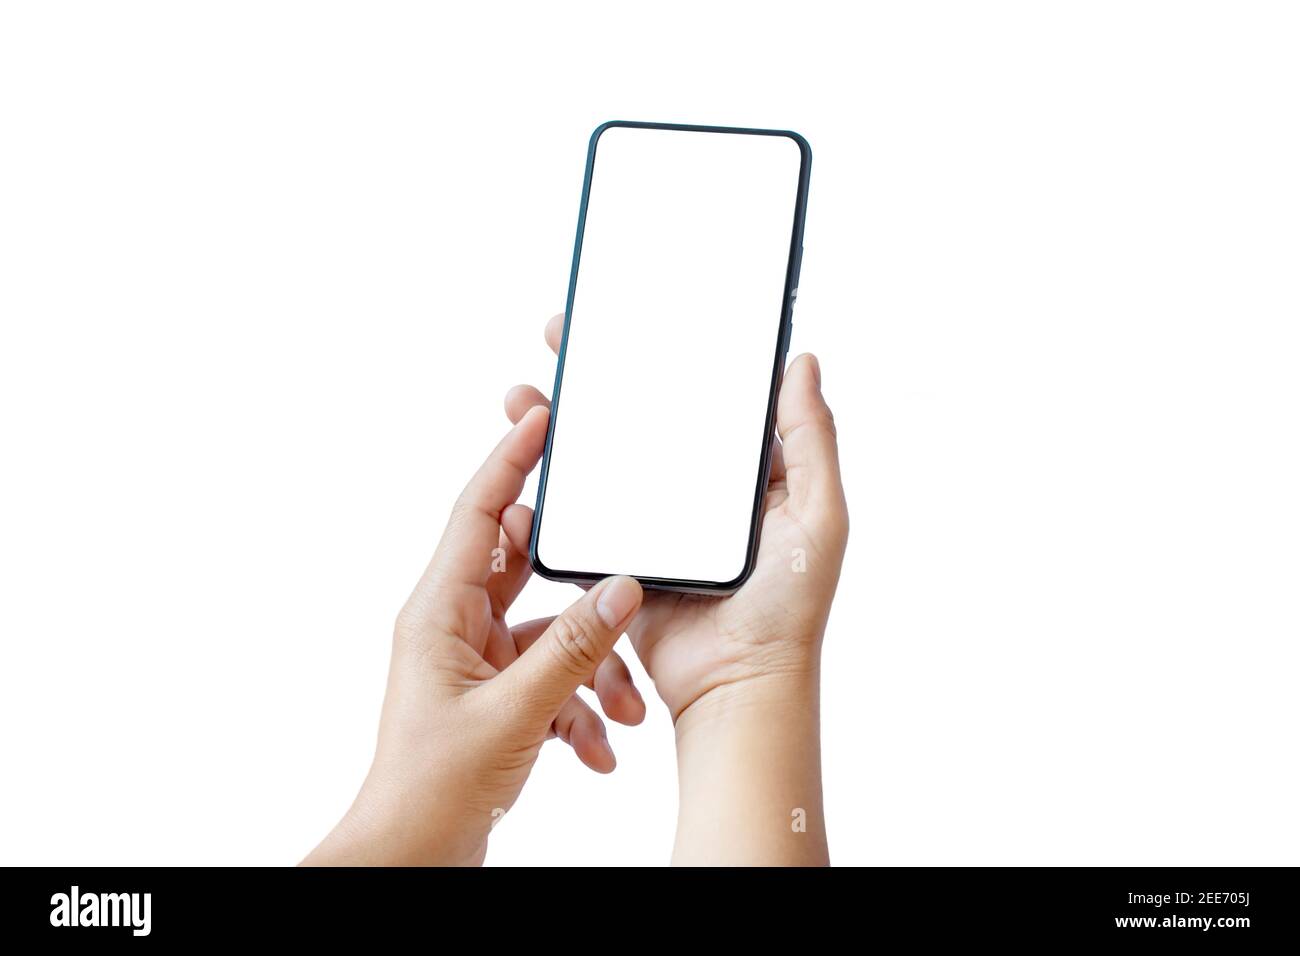 Les deux mains travaillent un smartphone avec un design moderne et un écran vierge séparément sur un fond blanc avec le chemin de coupure. Banque D'Images